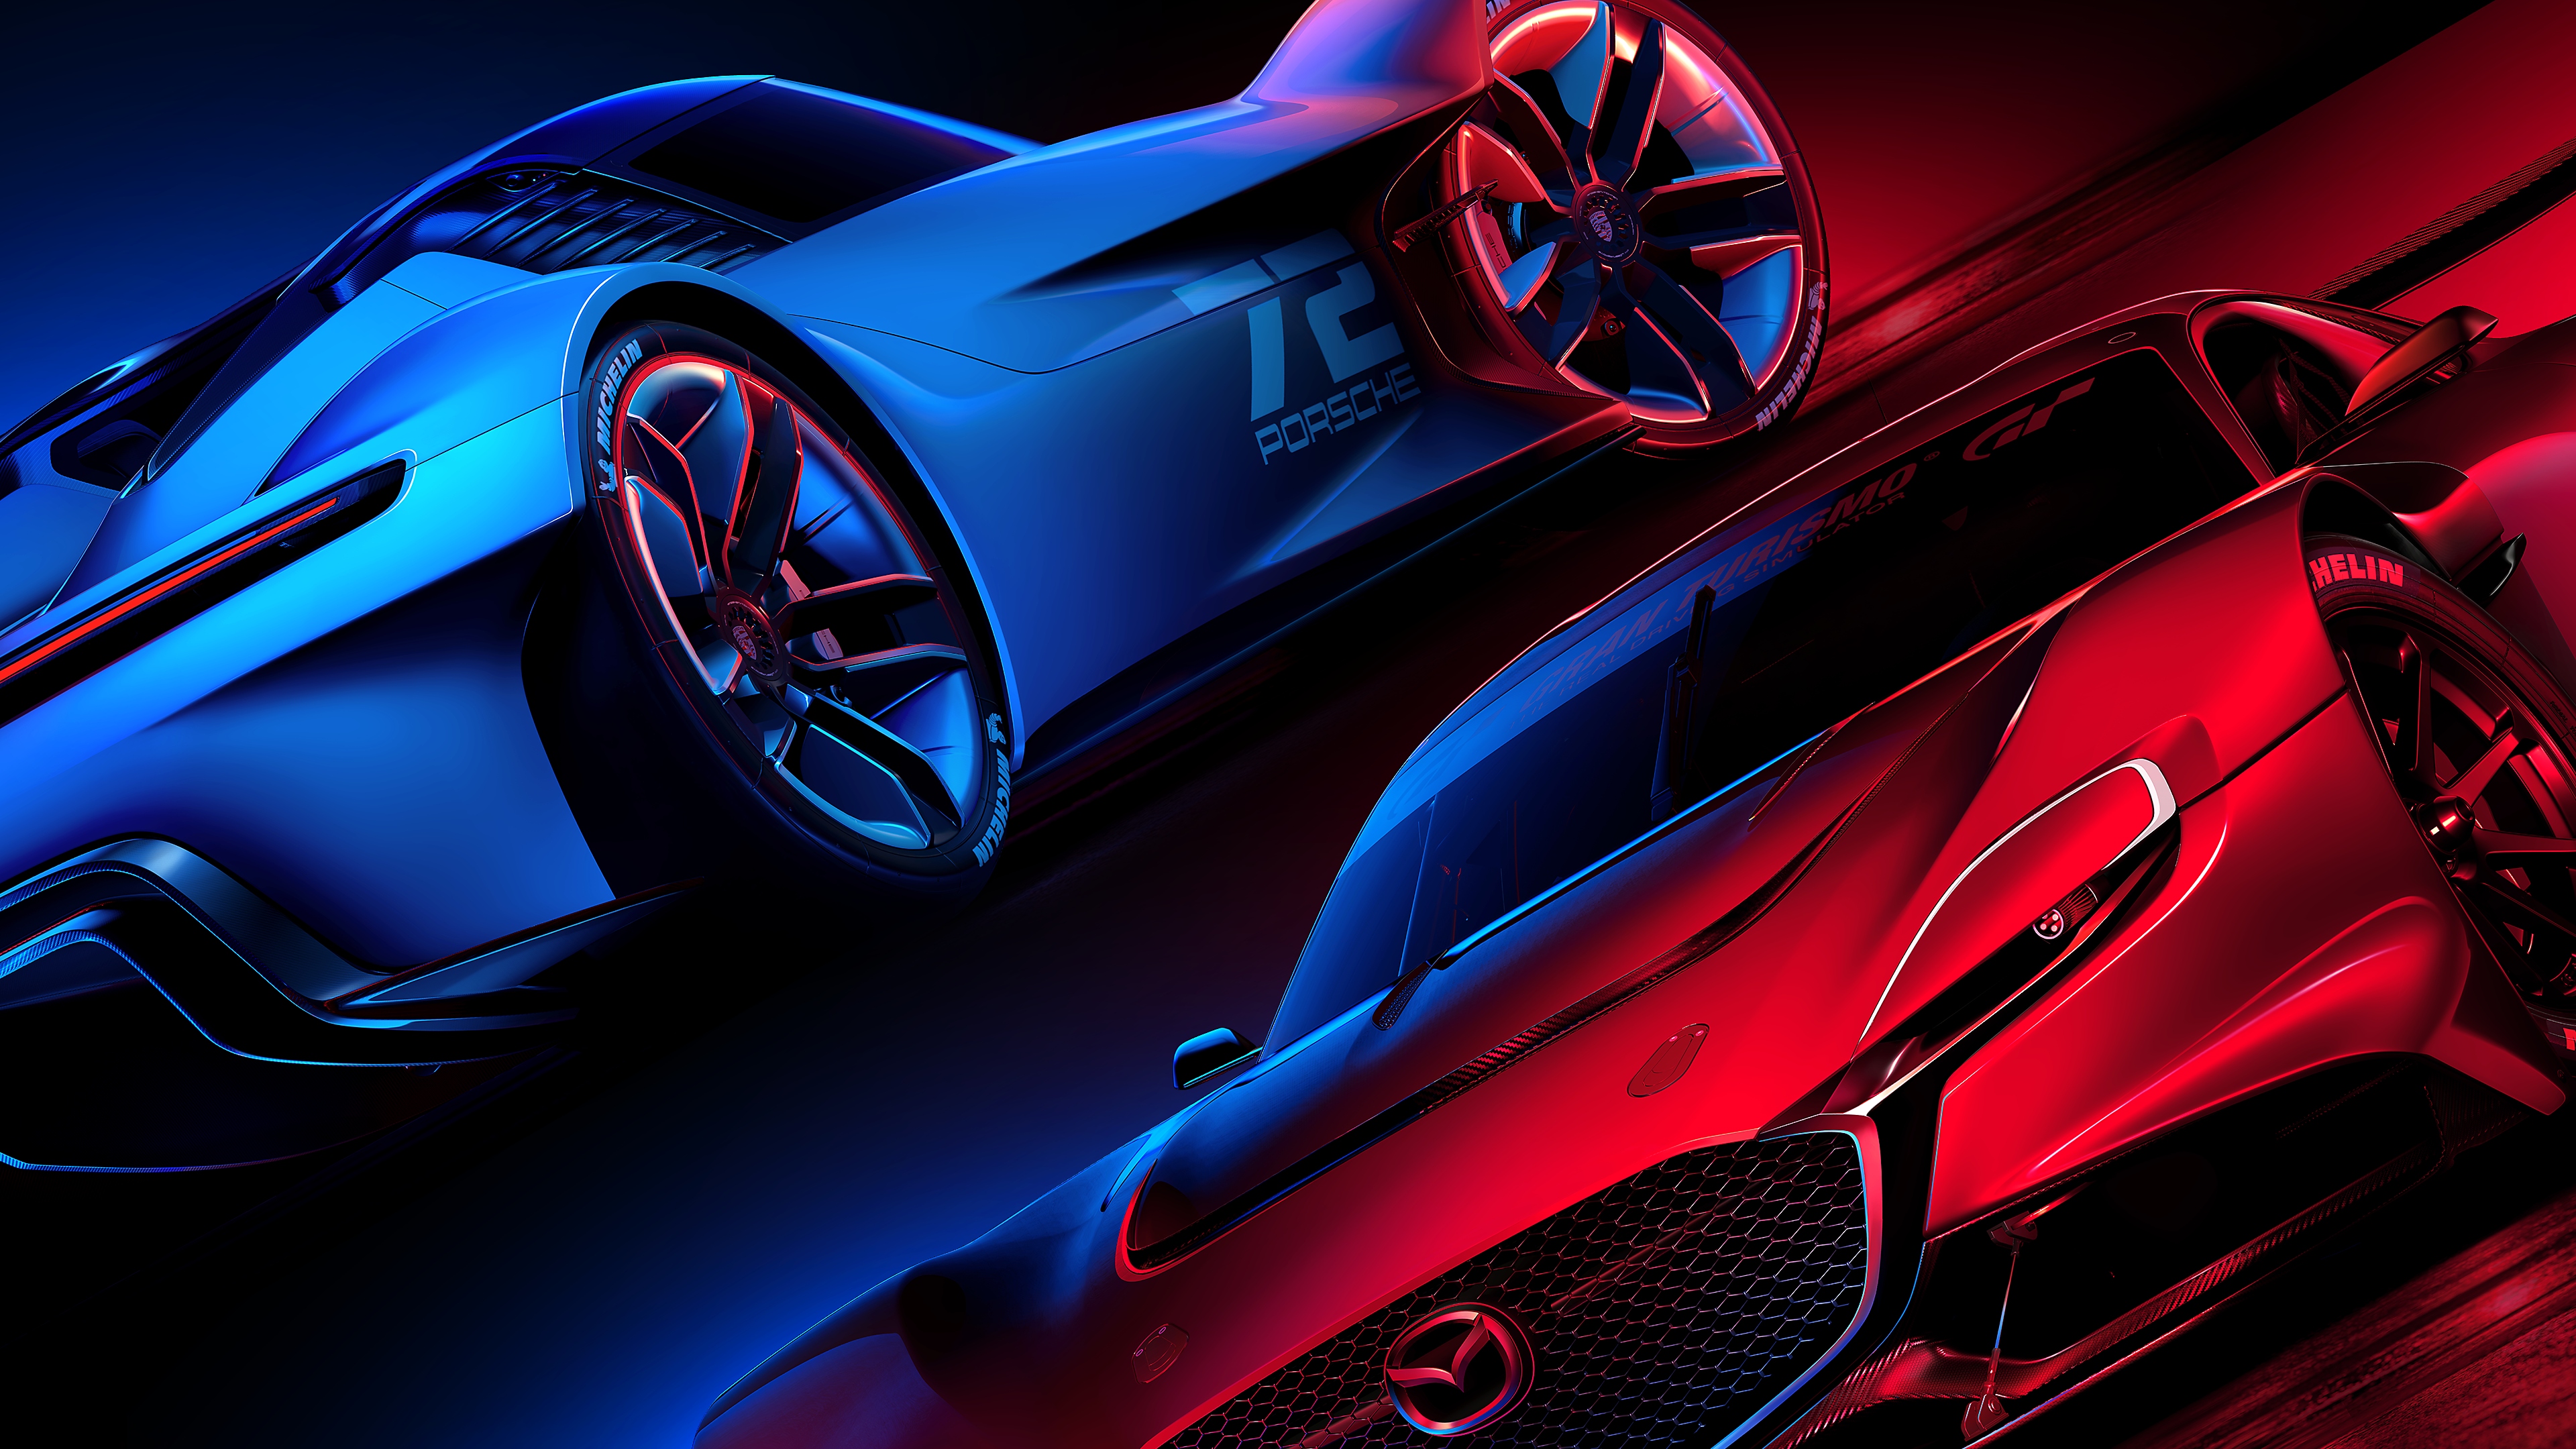 Gran Turismo 7 – slikovno gradivo v rdeči in modri barvi